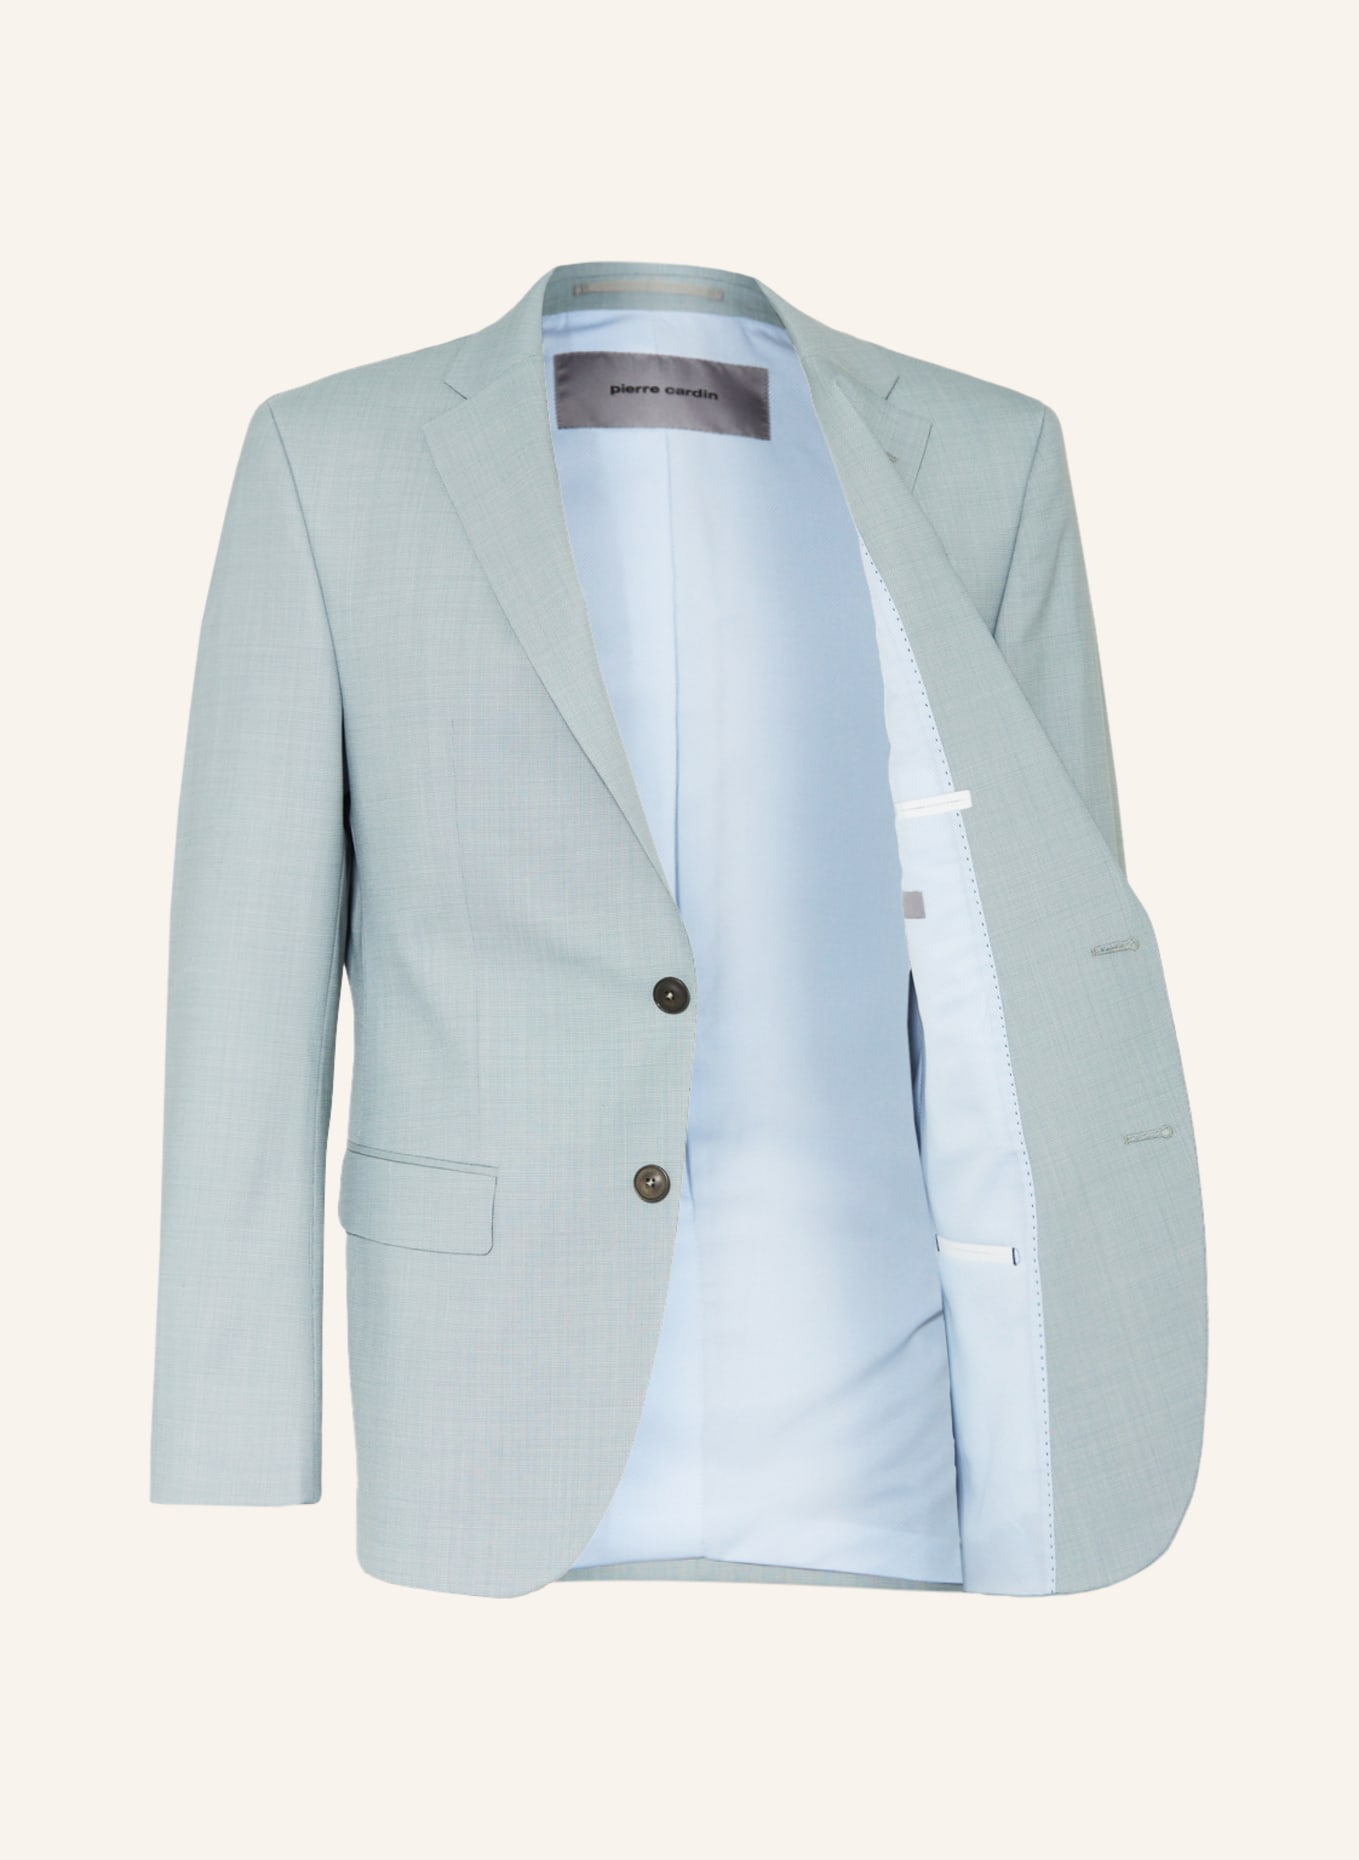 pierre cardin Suit jacket GRANT Regular Fit, Color: 5010 Mint (Image 4)